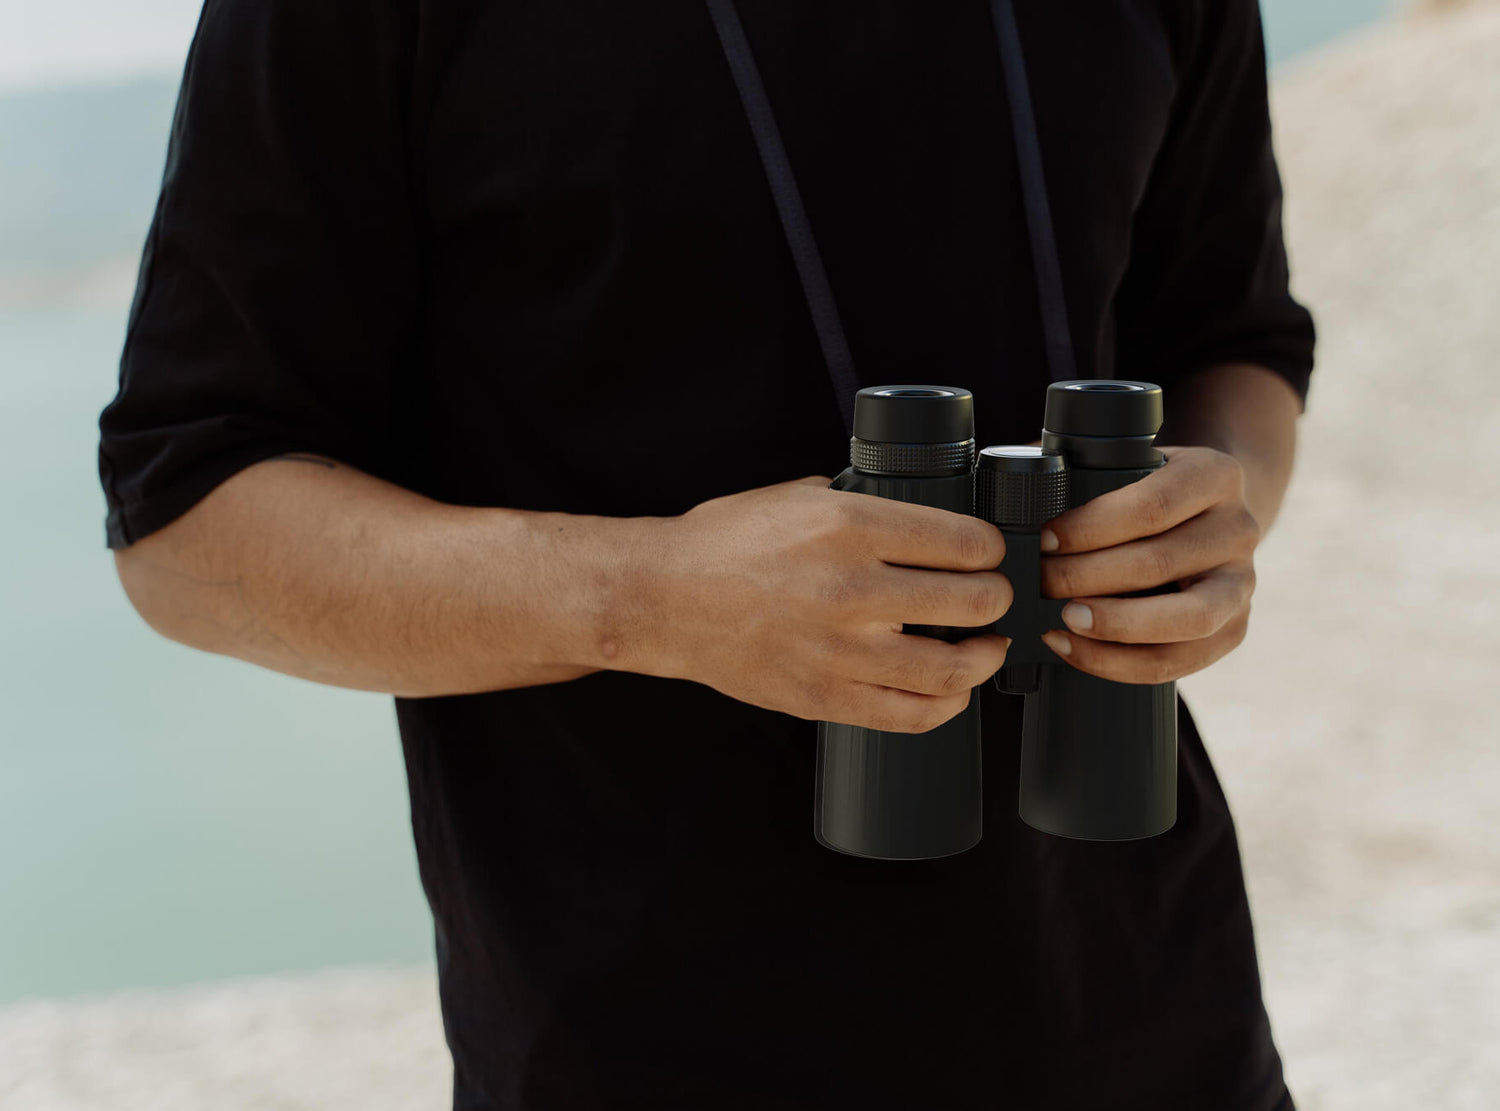 Outdoor Observation with the Apexel 12X50 Waterproof Binoculars